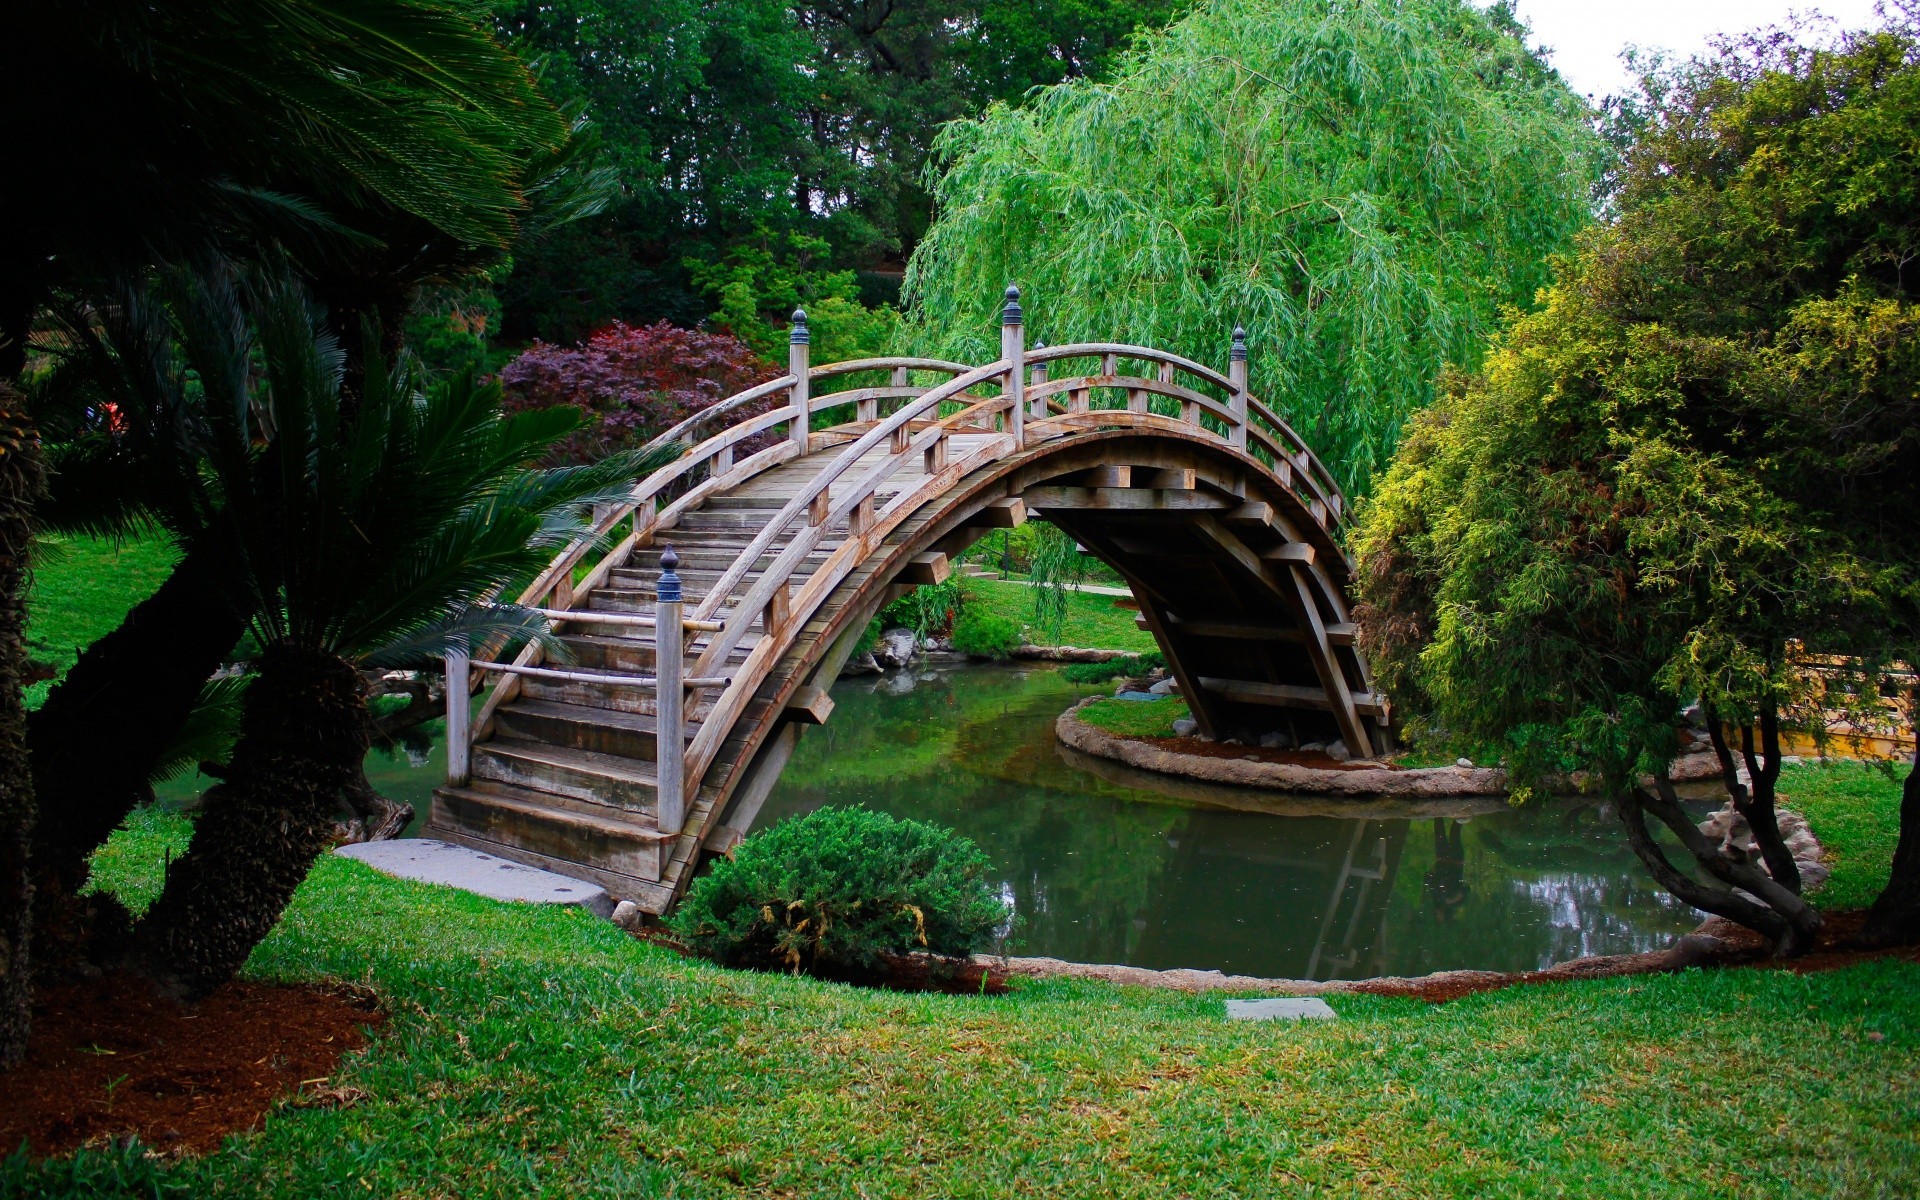 азия древесины дерево сад парк природа воды мост на открытом воздухе лист лето путешествия трава деревянные пейзаж красивые флора